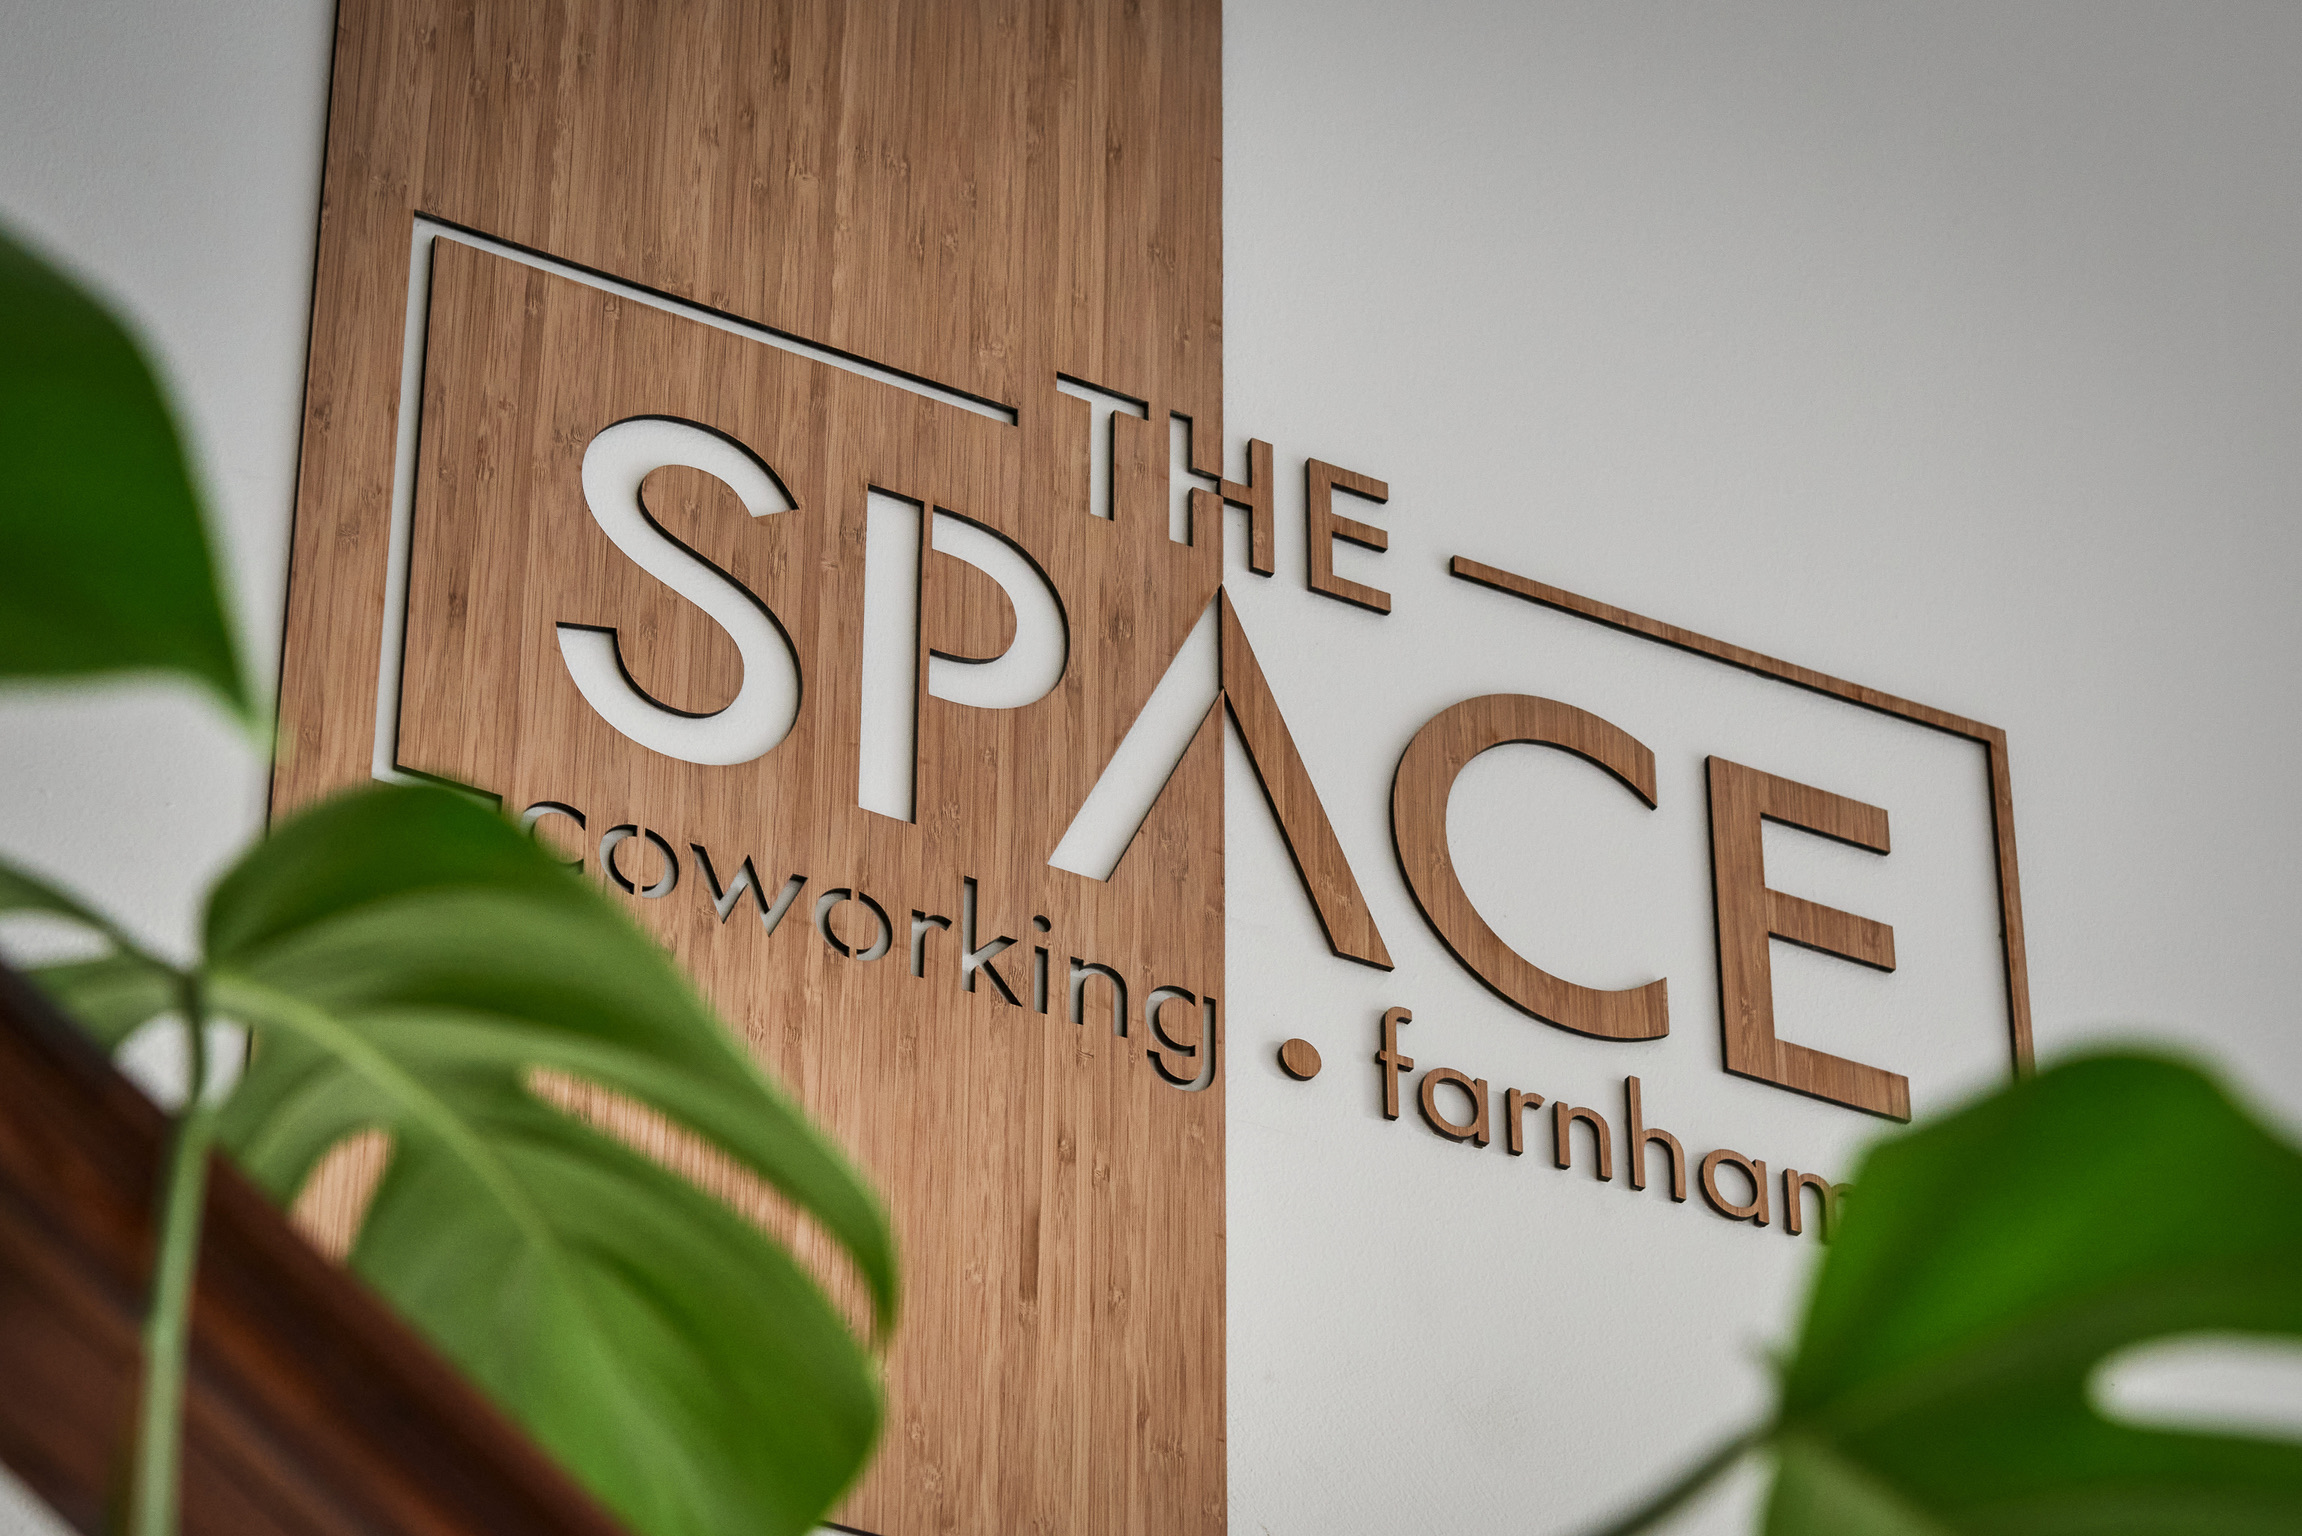 The Space Coworking Farnham